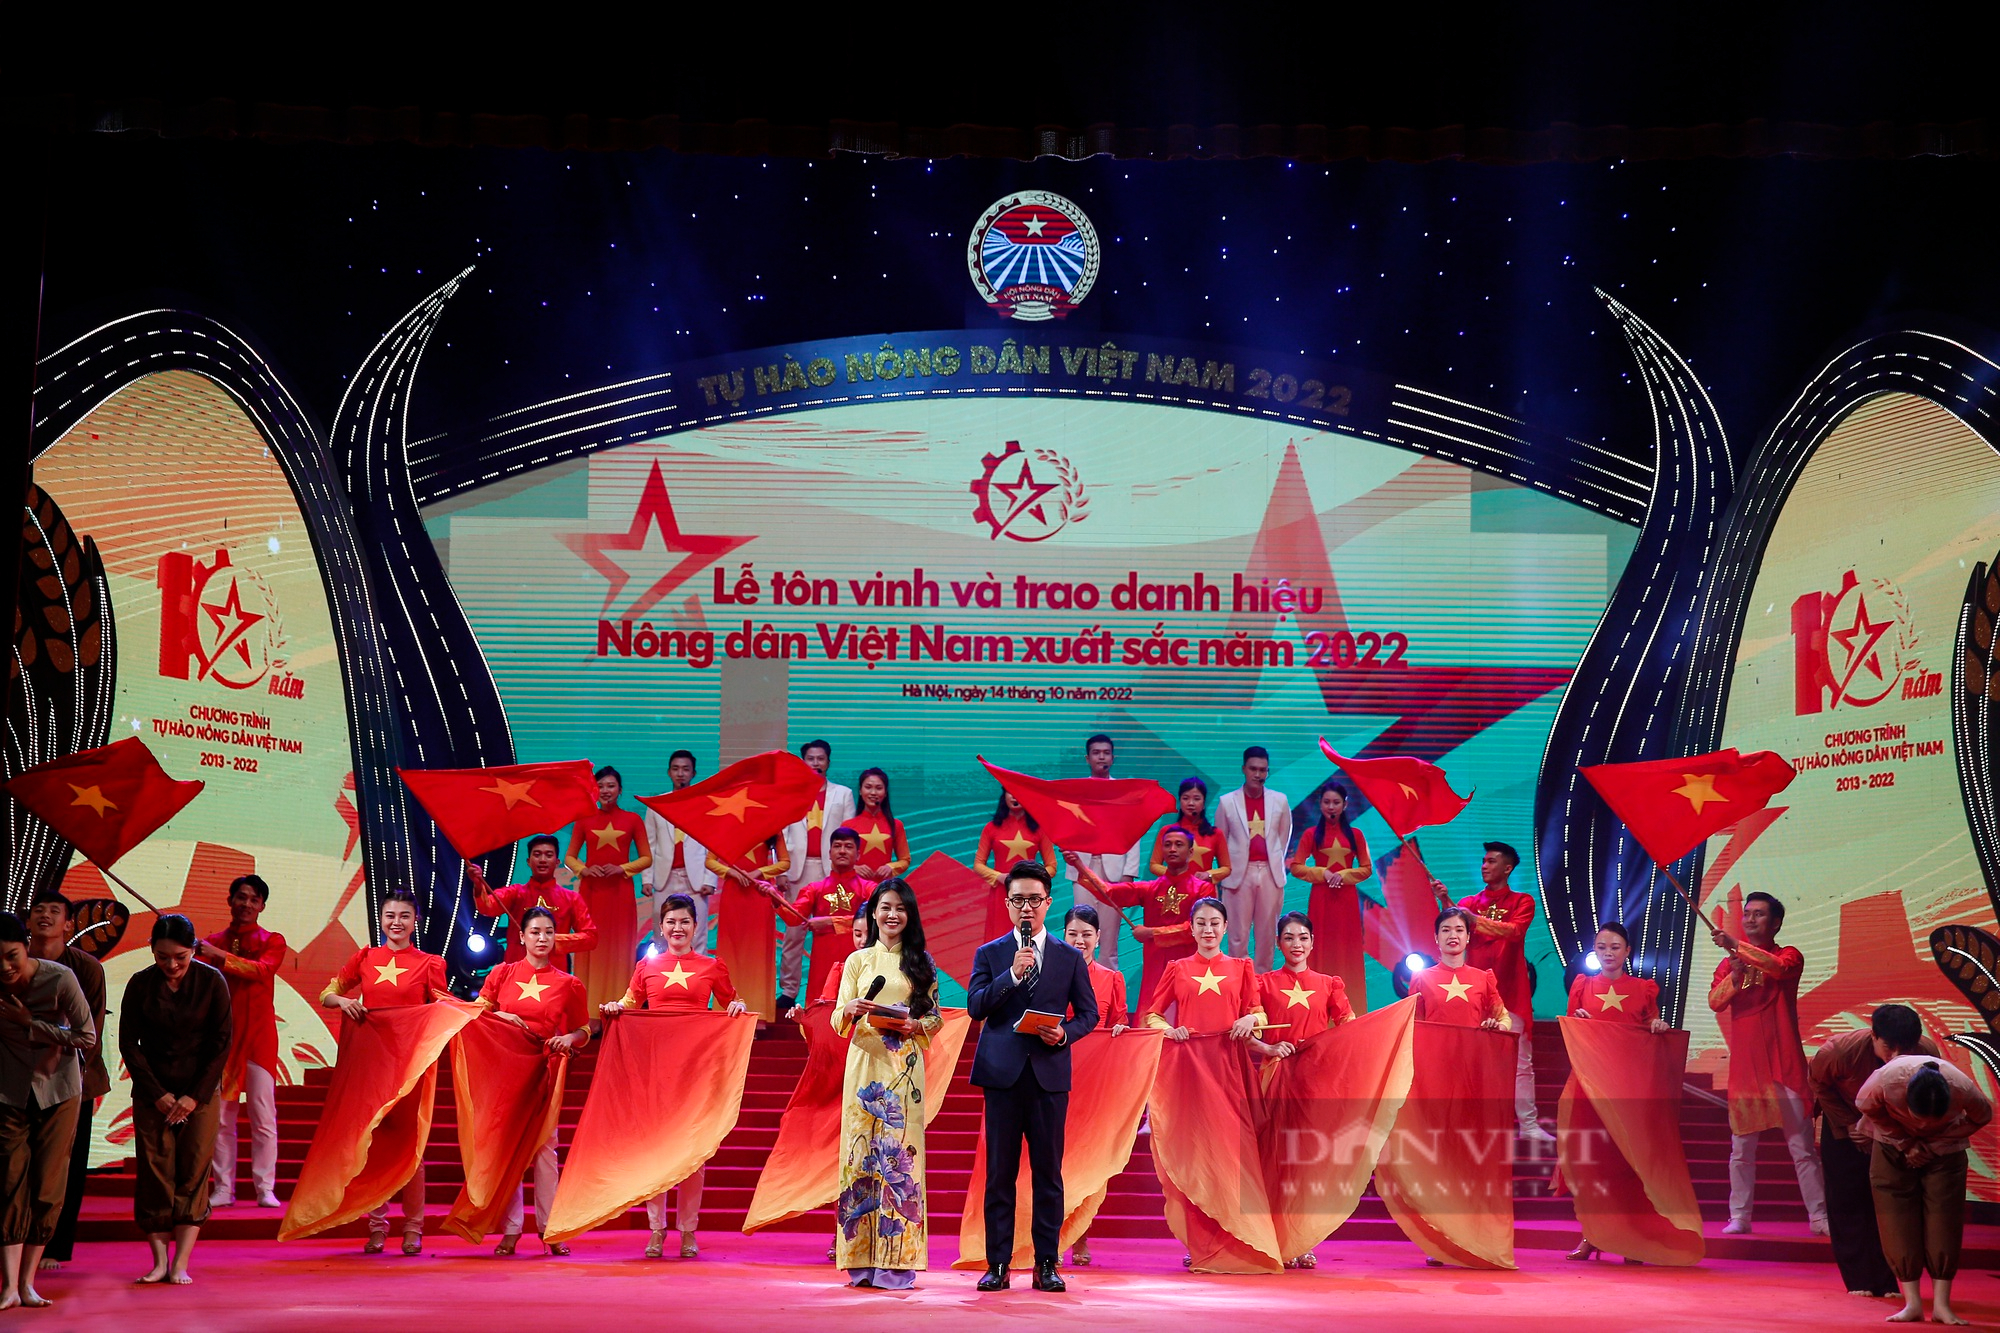 Ảnh toàn cảnh Lễ tôn vinh và trao danh hiệu cho 100 Nông dân Việt Nam xuất sắc 2022 - Ảnh 3.